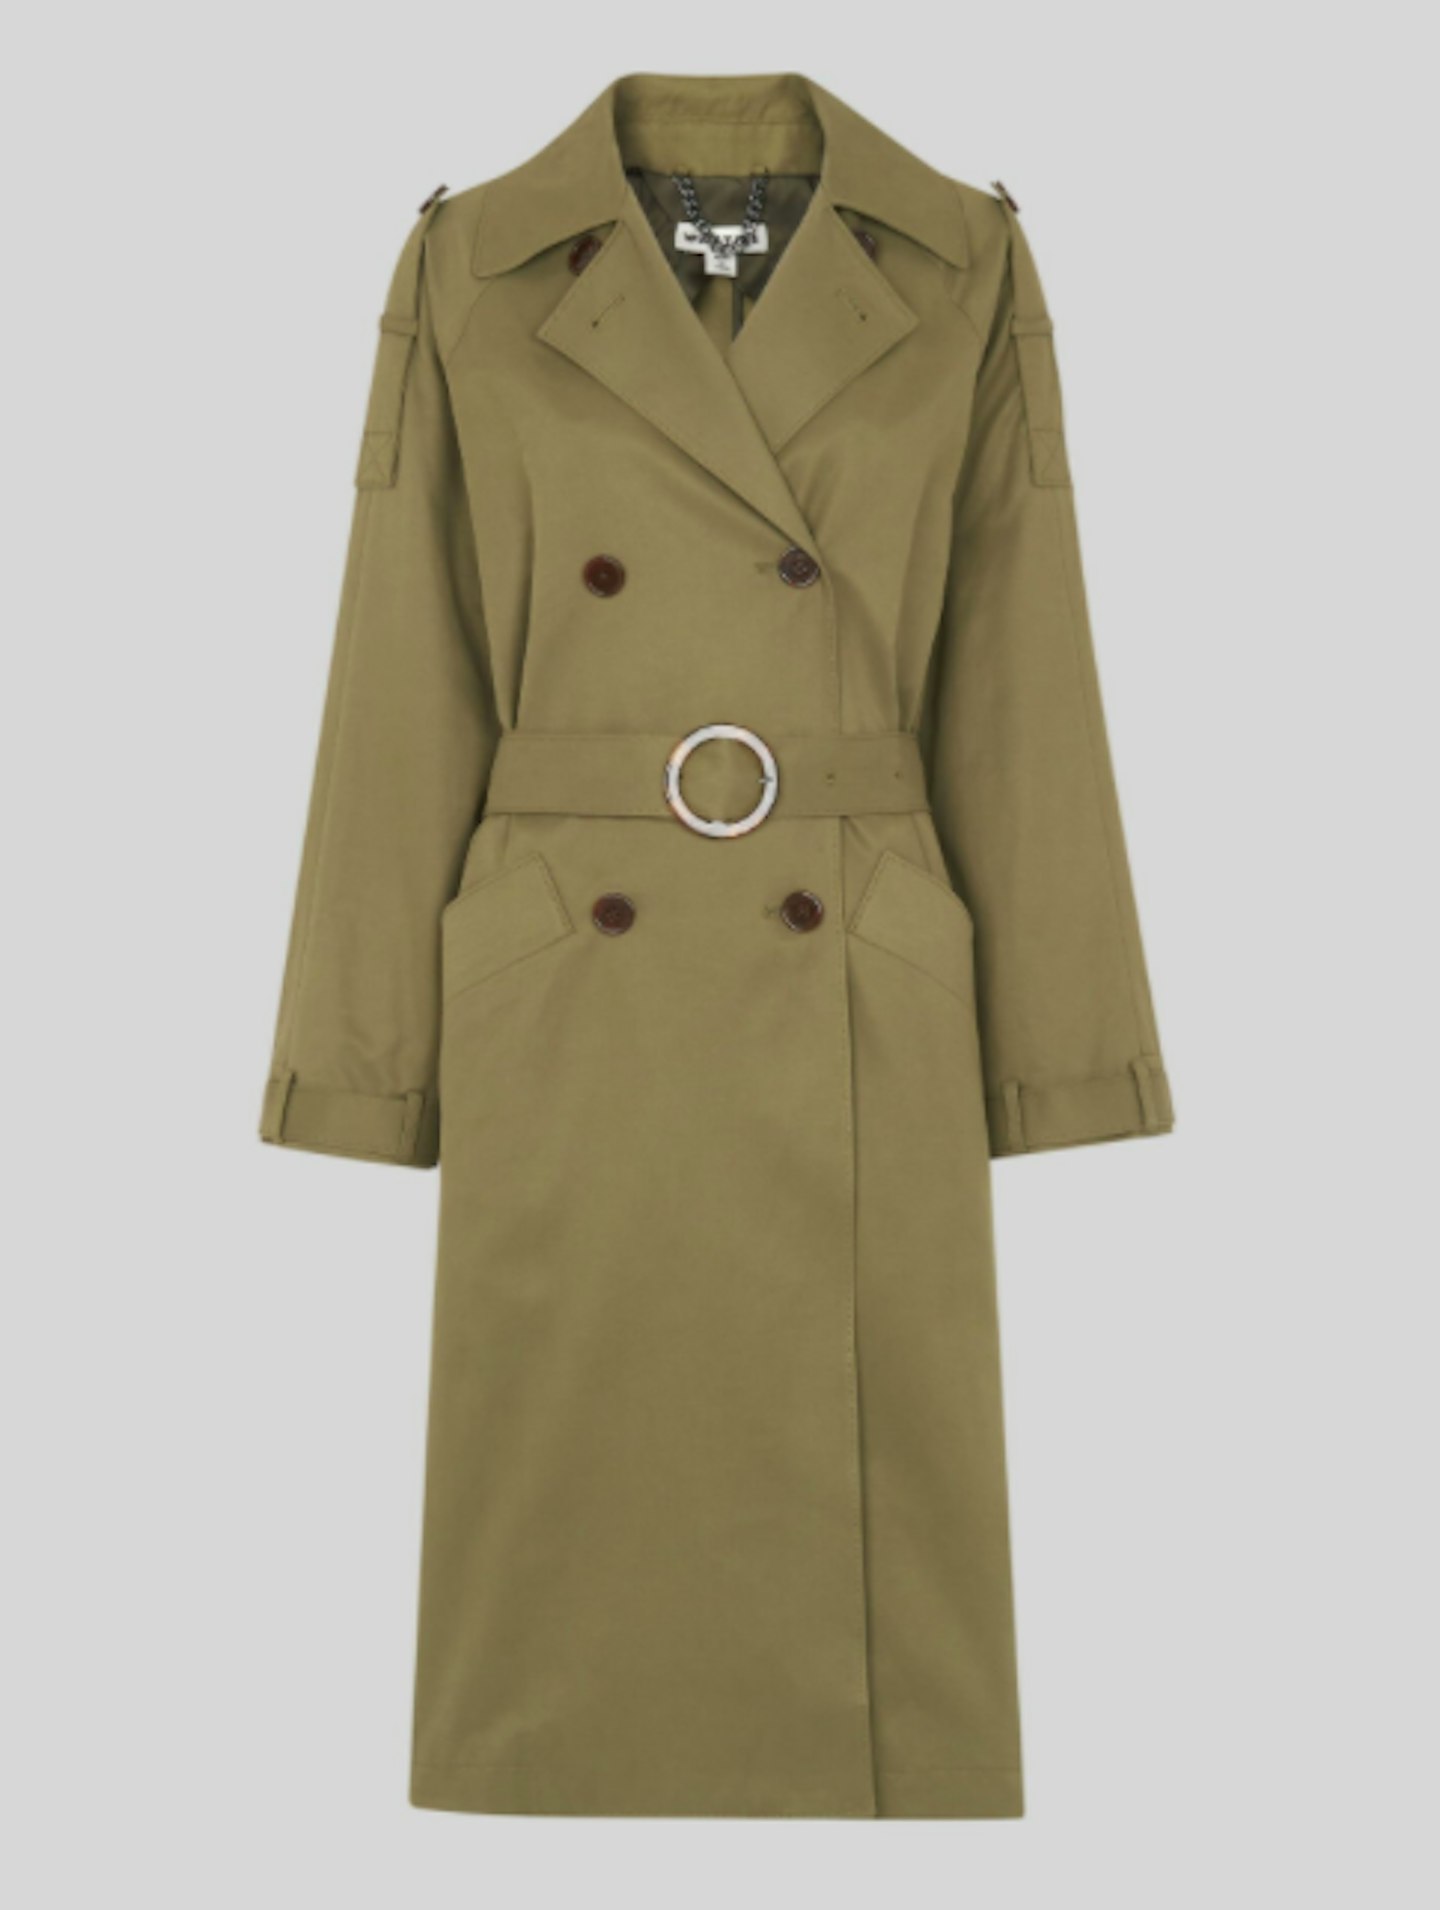 Whistles, Izzy Trench Coat, £199